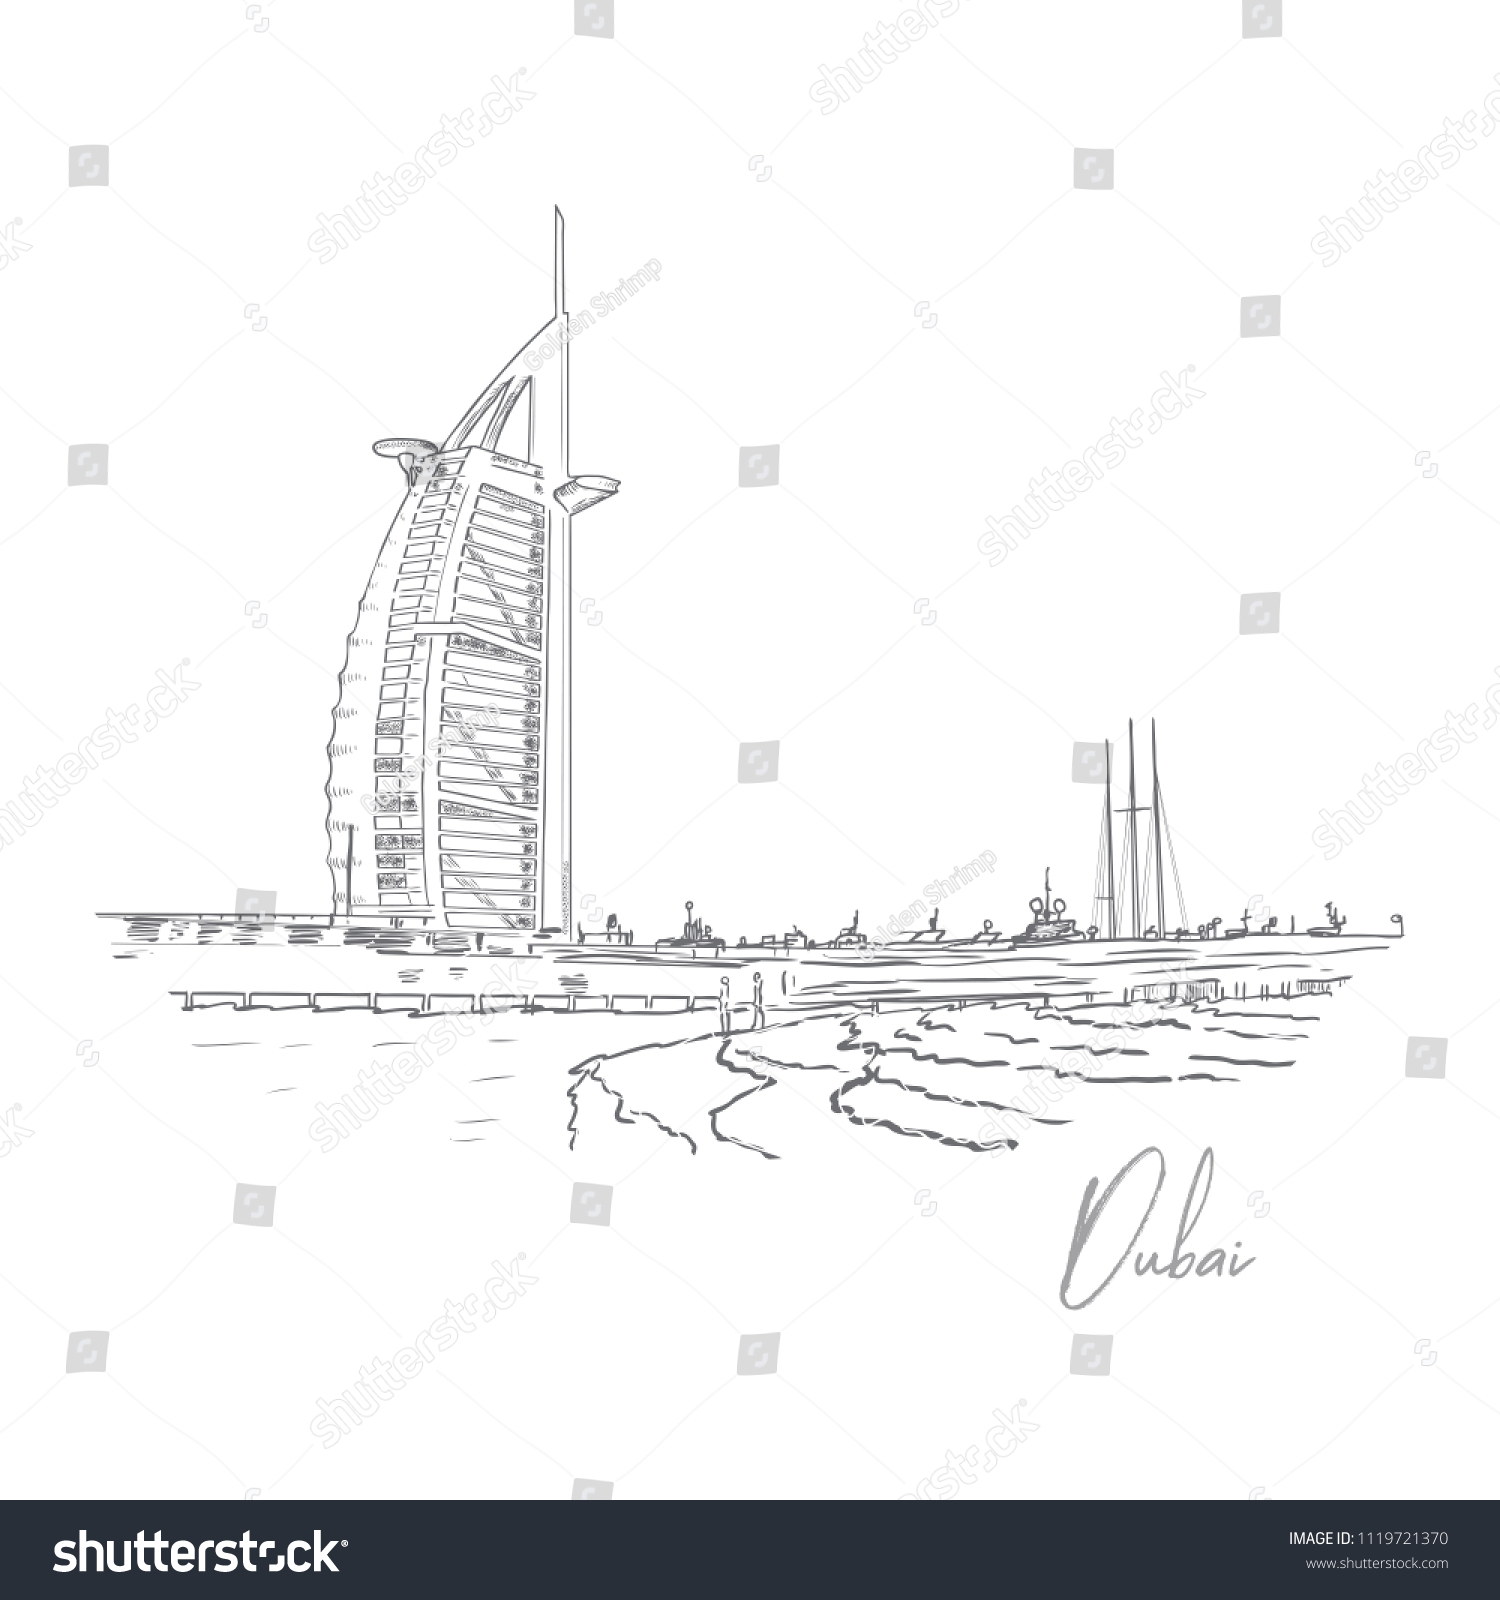 16 Burj al arab front view Stock Illustrations, Images & Vectors ...